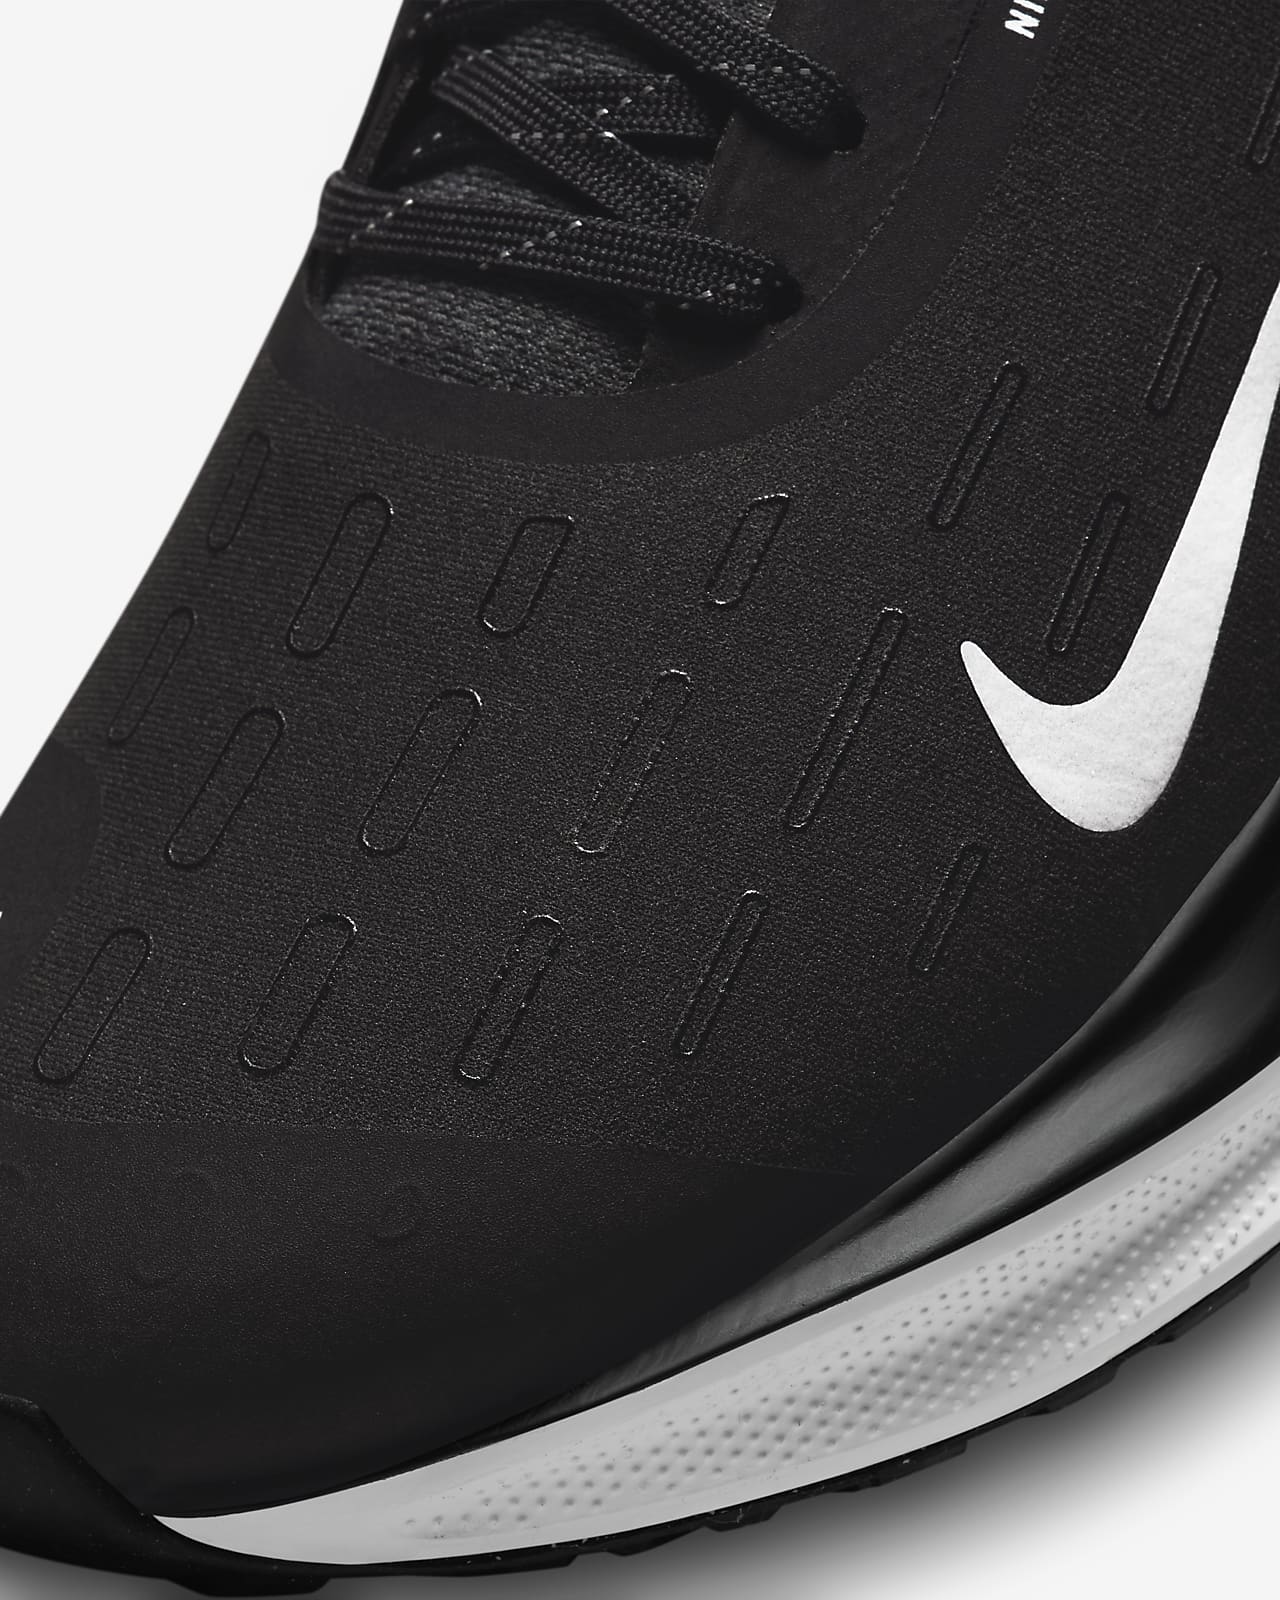 Nike InfinityRN 4 GORE-TEX Men's Waterproof Road Running Shoes.